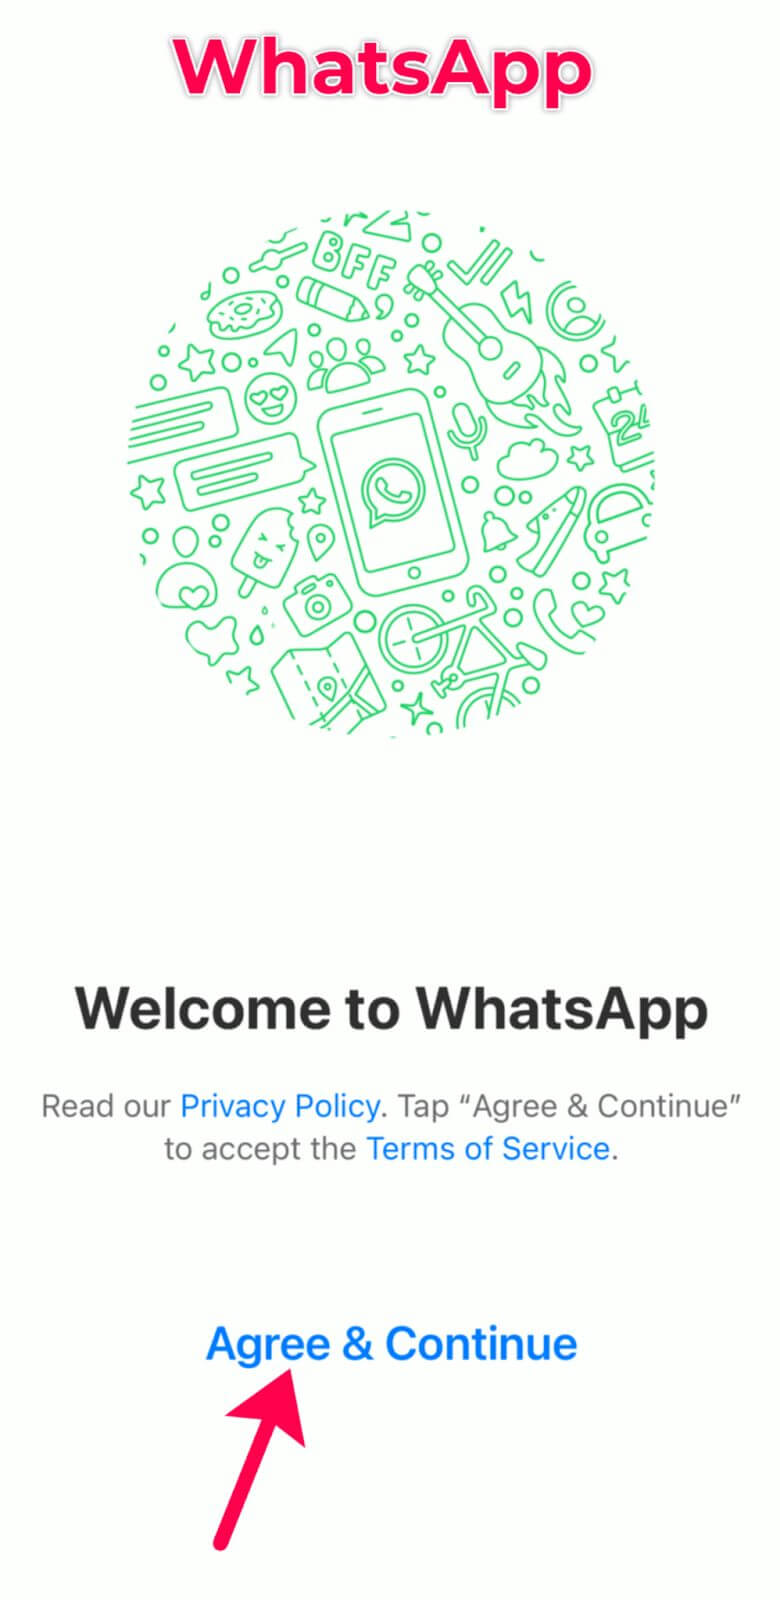 create a WhatsApp account